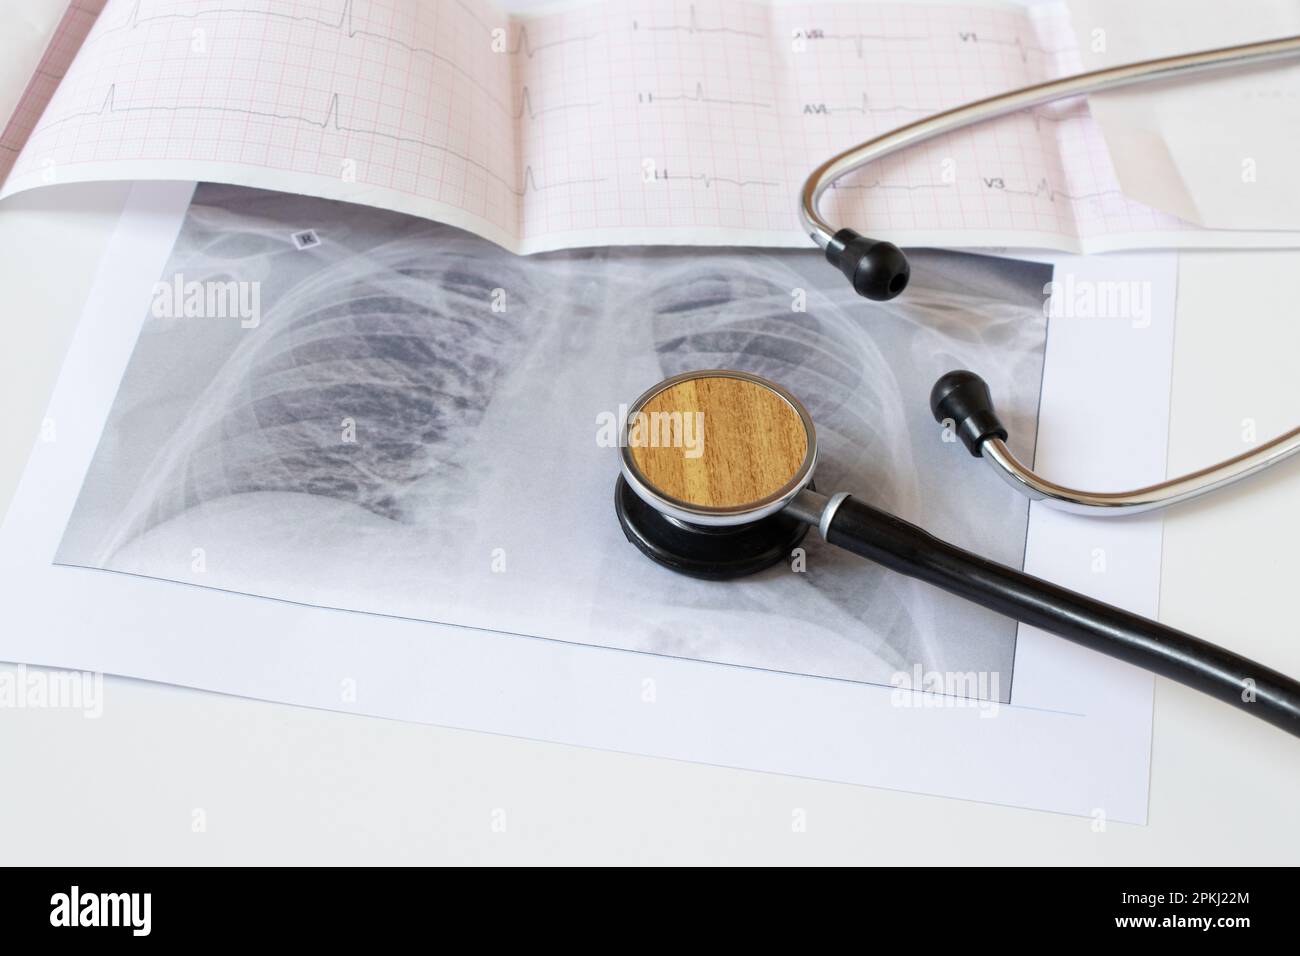 Immagine fluorografica dei polmoni su carta e un cardiogramma e uno stetoscopio su sfondo bianco, polmoni umani sani per l'esame di routine, healt Foto Stock